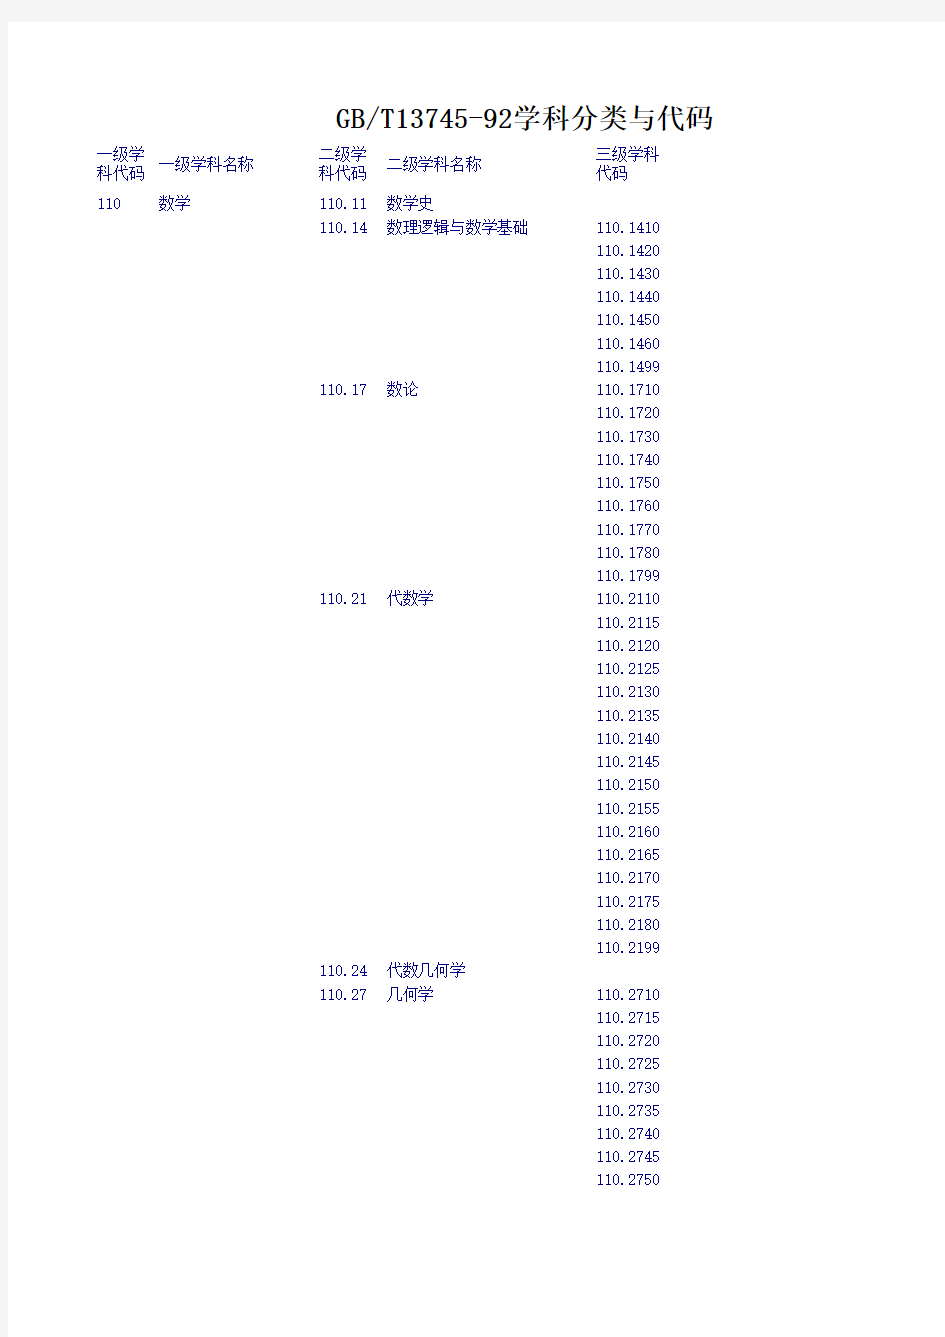 中华人民共和国国家标准学科分类与代码表(GB／T13745-92)